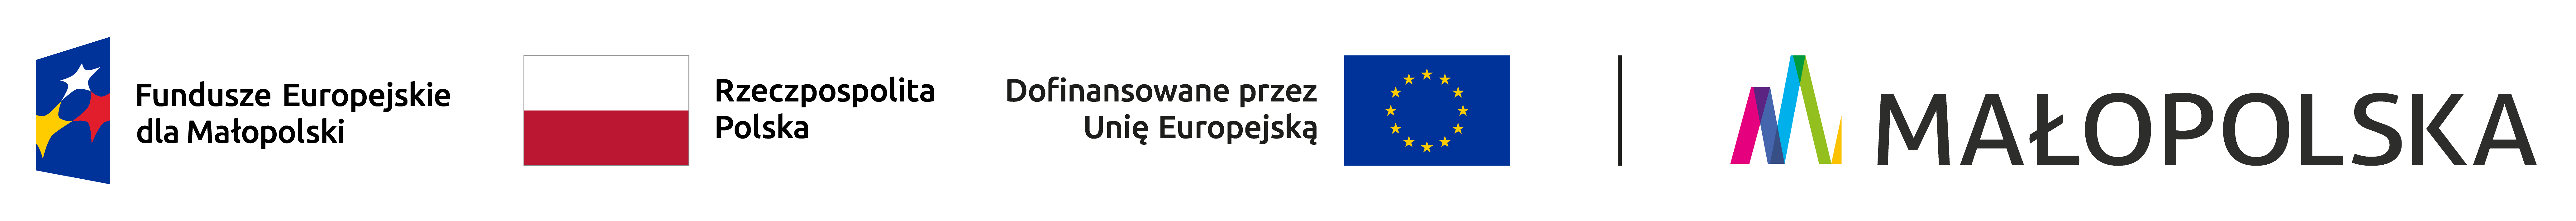 Pasek logotypów informujący o dofinansowaniu z programu Fundusze Europejskie dla Małopolski 2021-2027